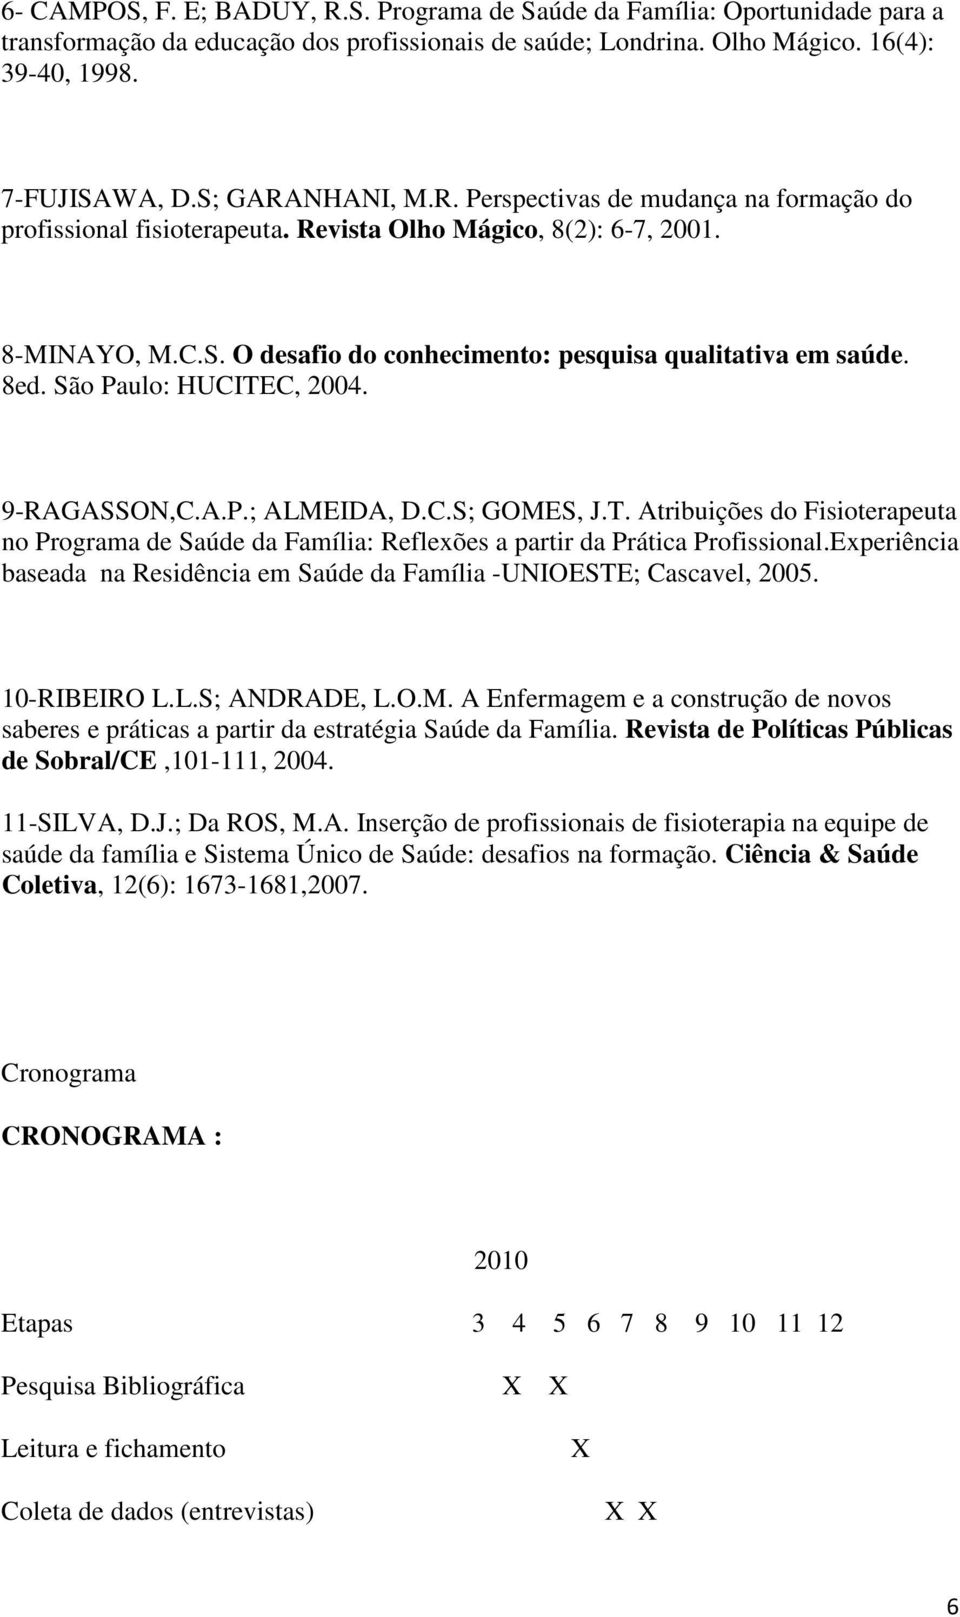 8ed. São Paulo: HUCITEC, 2004. 9-RAGASSON,C.A.P.; ALMEIDA, D.C.S; GOMES, J.T. Atribuições do Fisioterapeuta no Programa de Saúde da Família: Reflexões a partir da Prática Profissional.